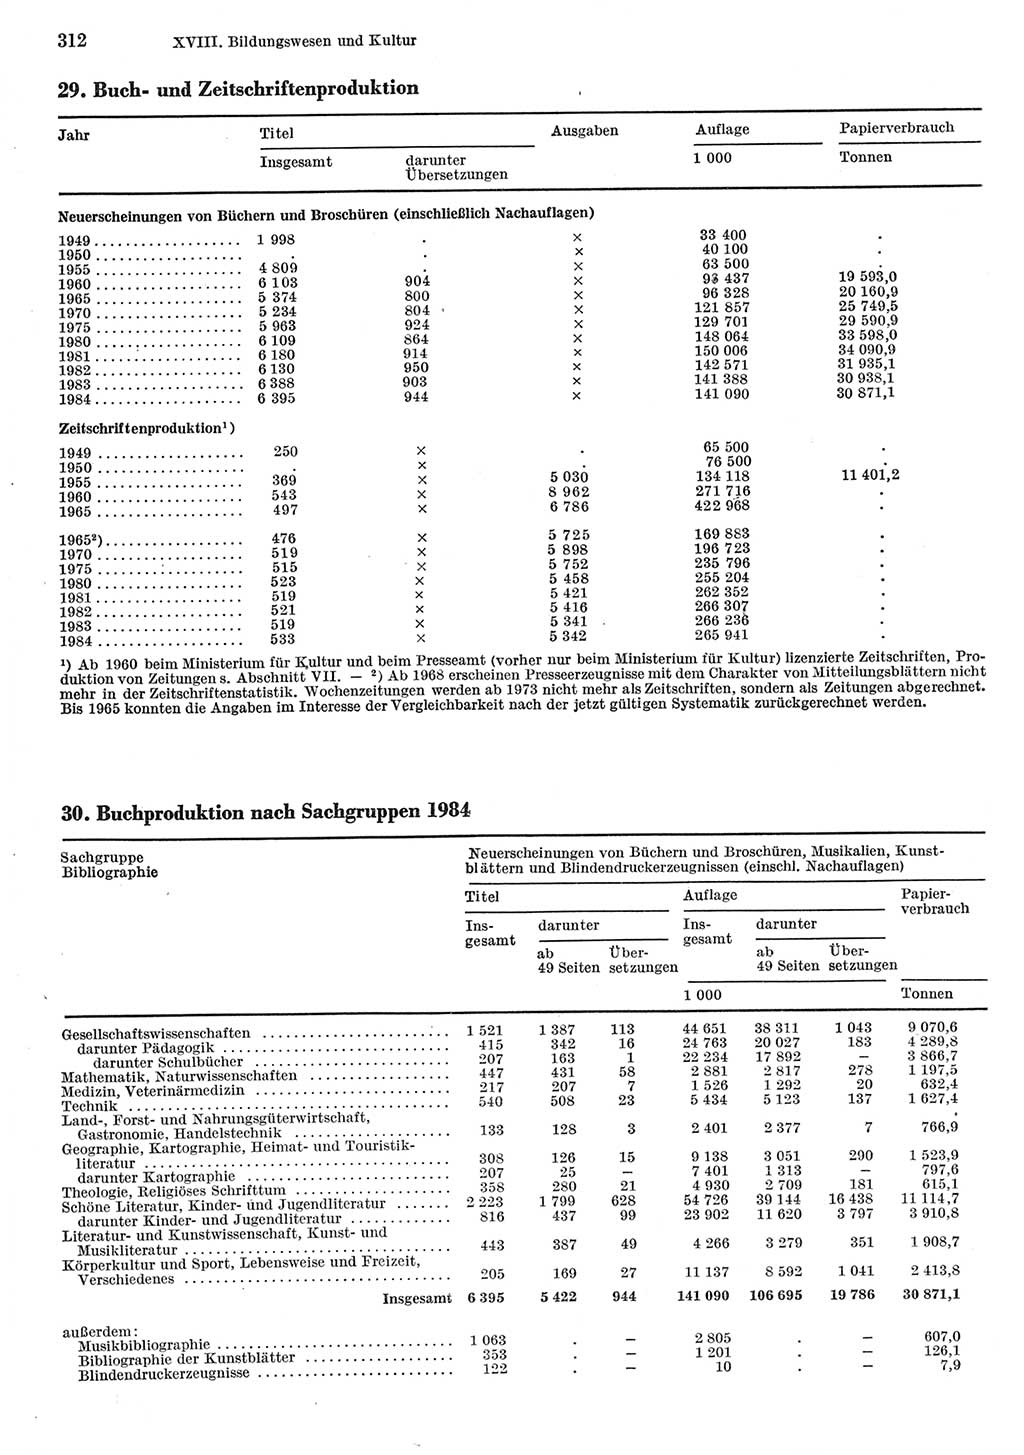 Statistisches Jahrbuch der Deutschen Demokratischen Republik (DDR) 1985, Seite 312 (Stat. Jb. DDR 1985, S. 312)